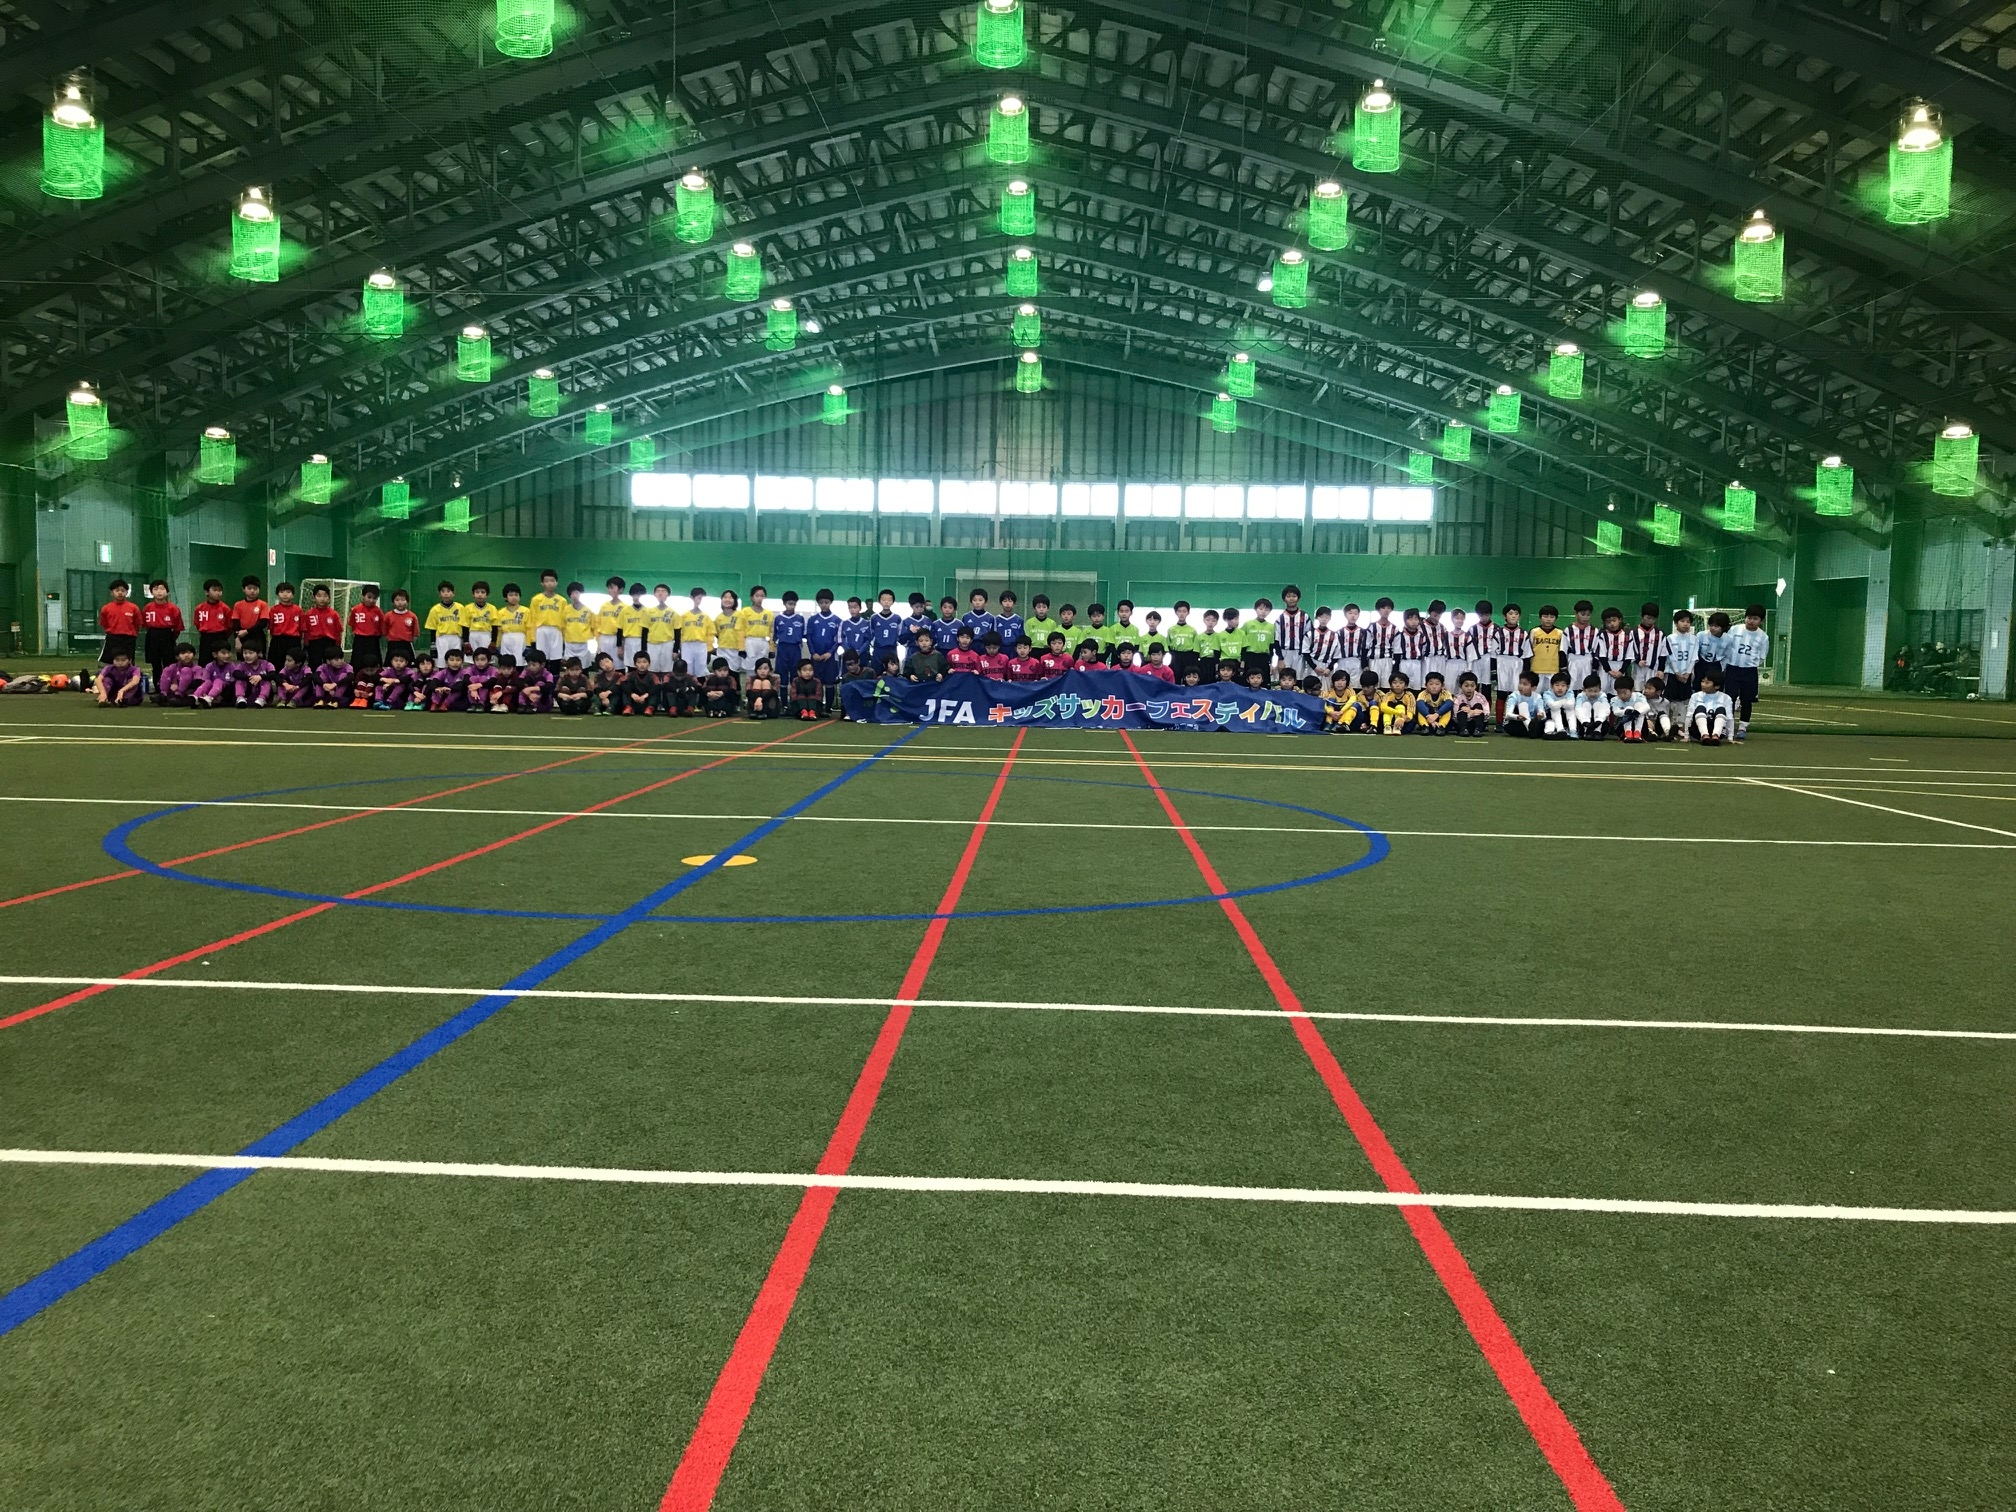 JFAキッズサッカーフェスティバル in 新潟県城山運動公園